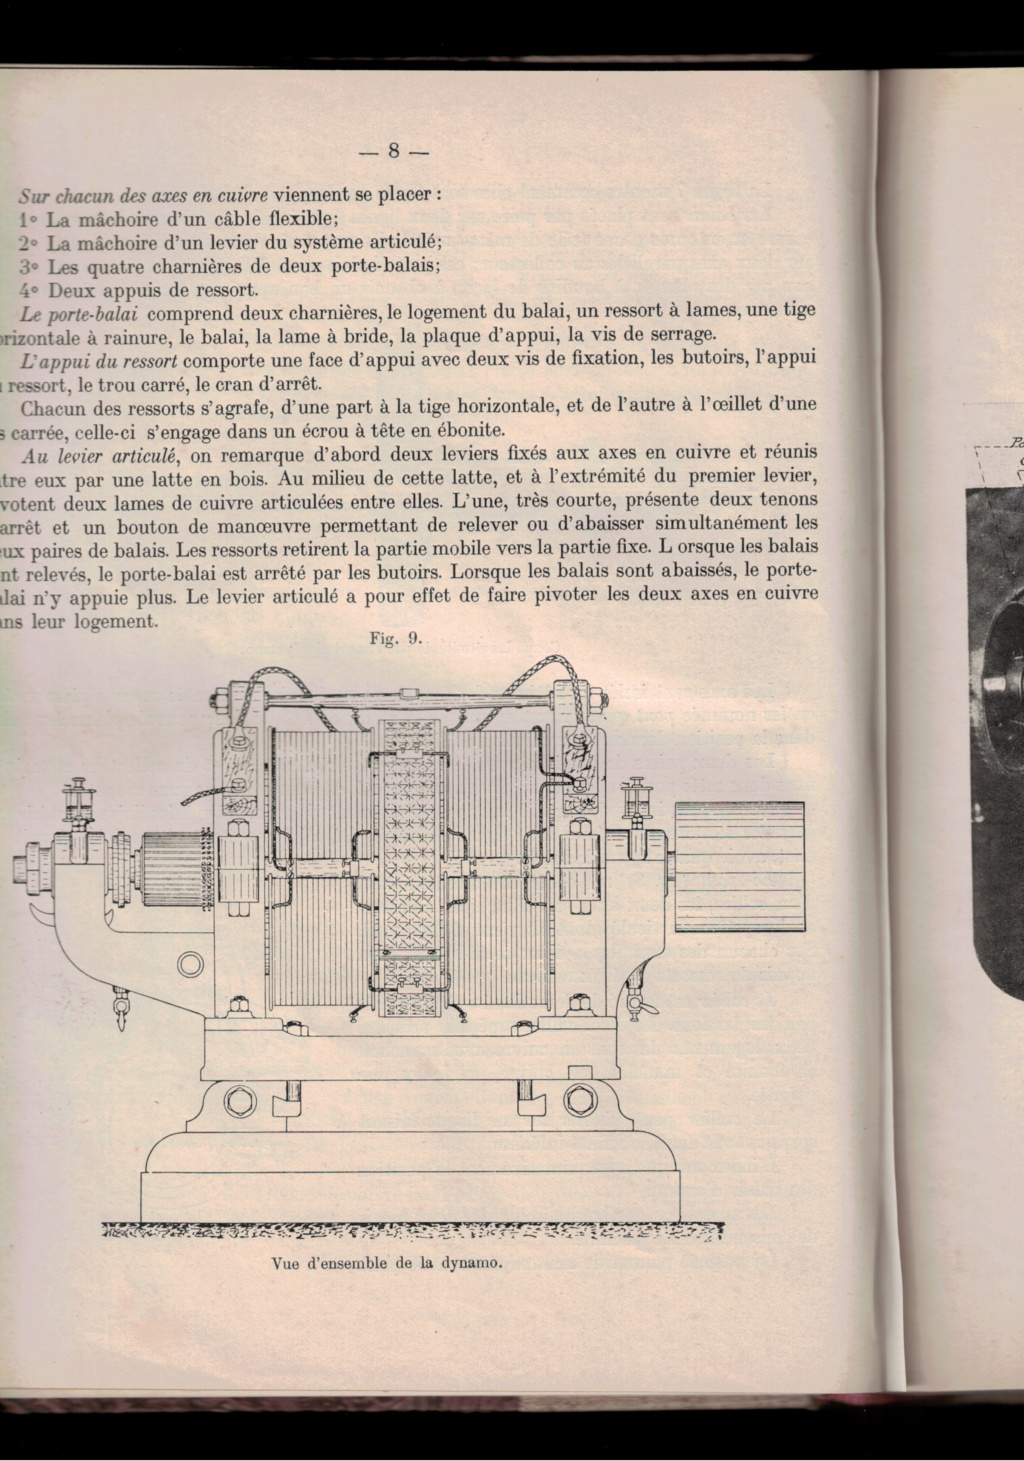 MACHINE A VAPEUR DES FORTS BELGES DE LA MEUSE EN 1914 - Page 9 Cci08010